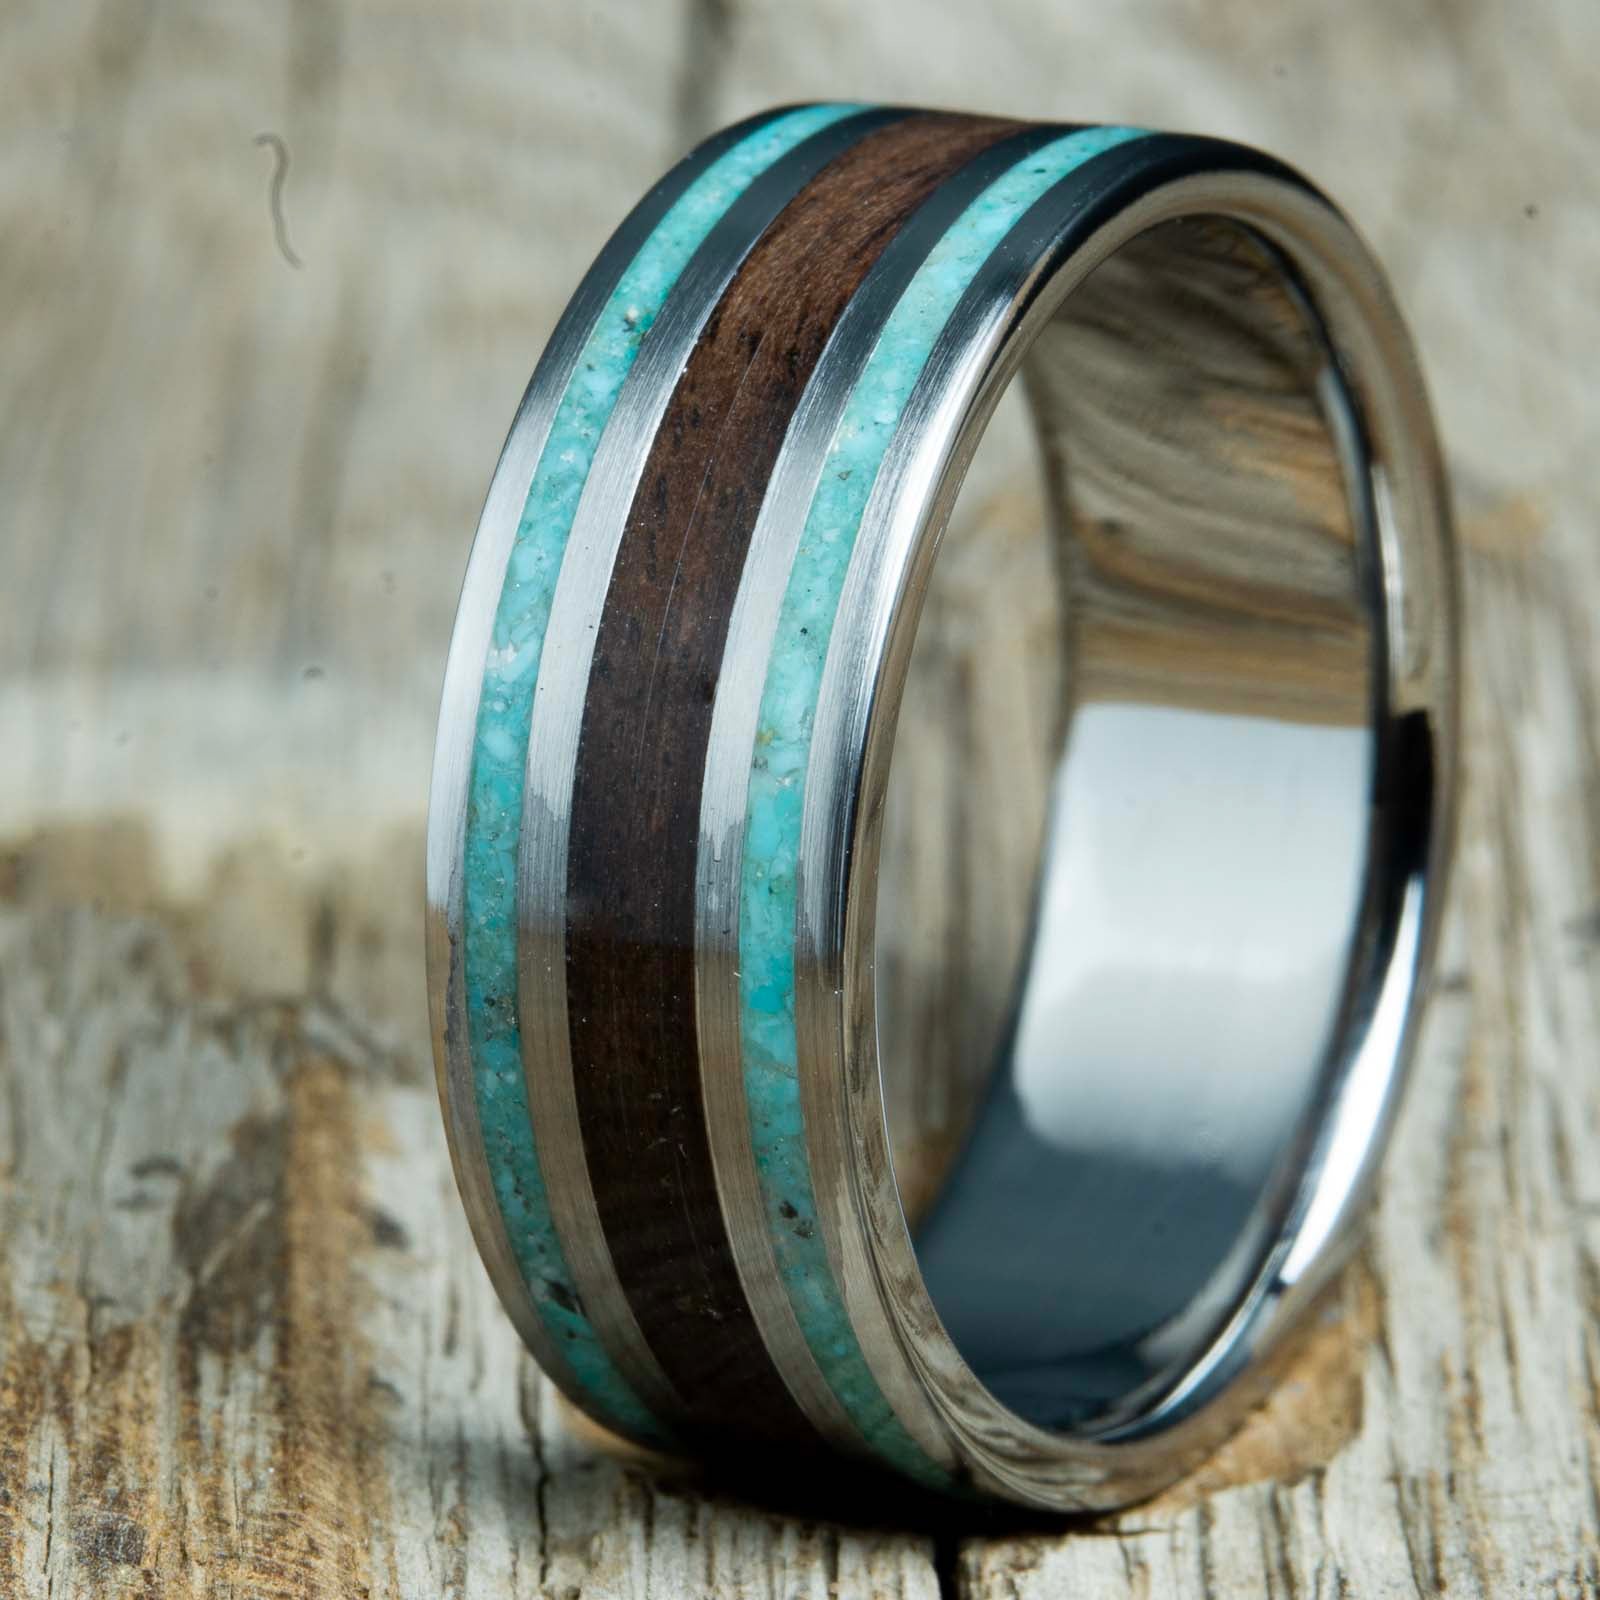 Black Walnut wood wedding ring with turquoise stone